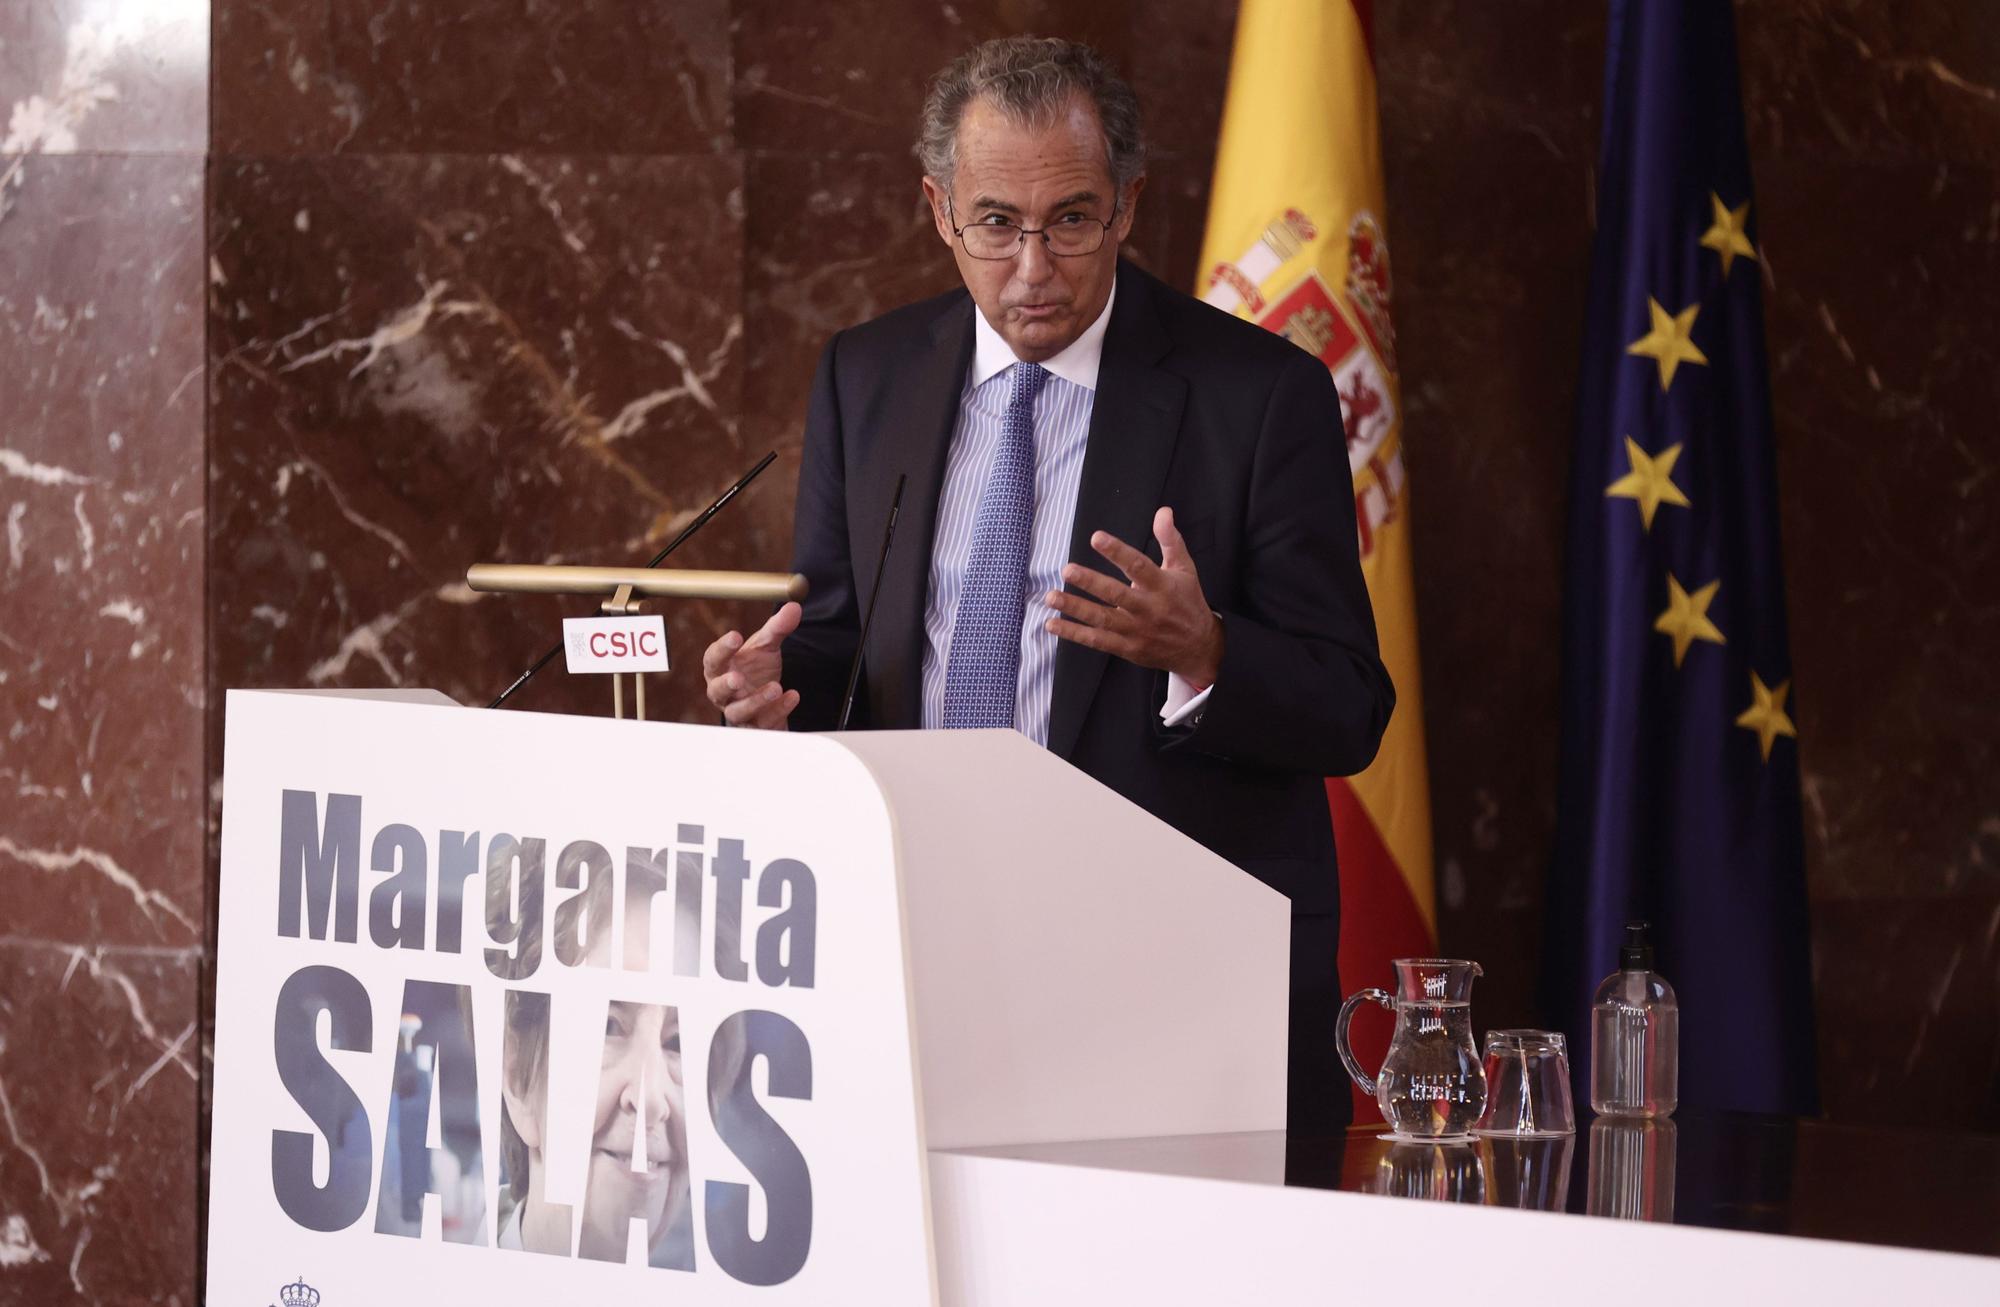 La ciencia española se rinde a Margarita Salas y su "inmenso legado"